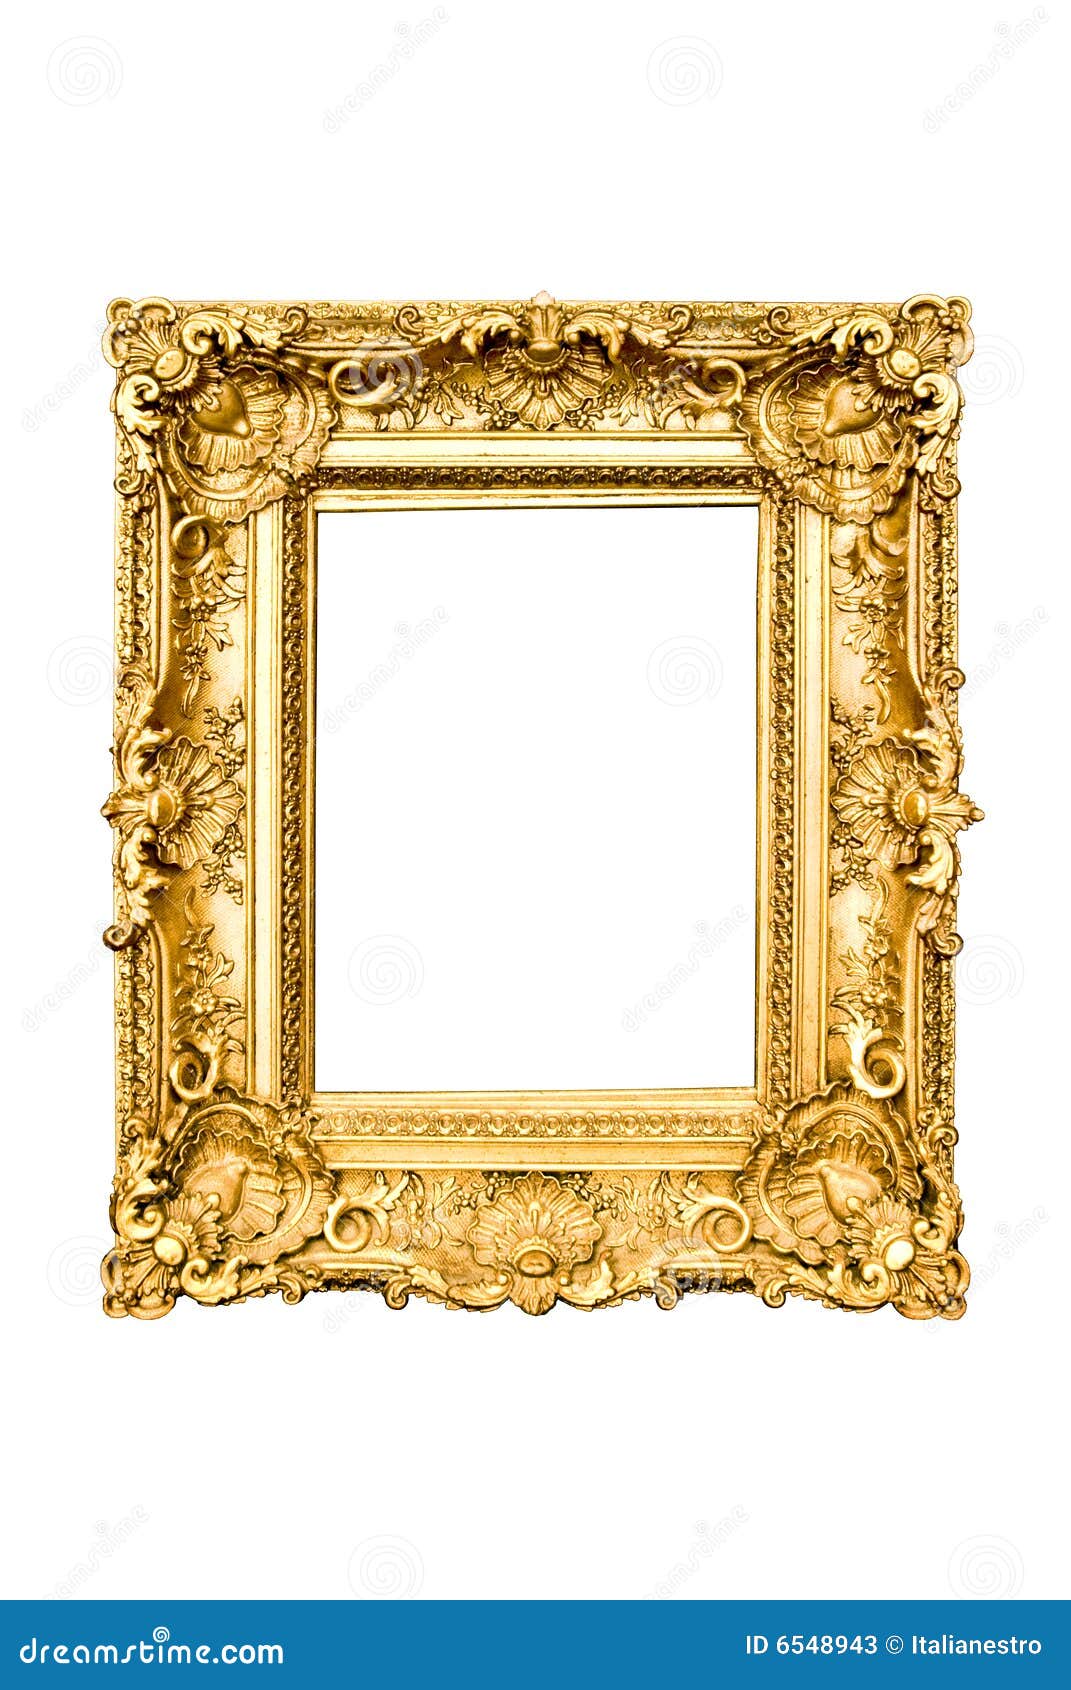 Gouden stock afbeelding. Image of decoratie -